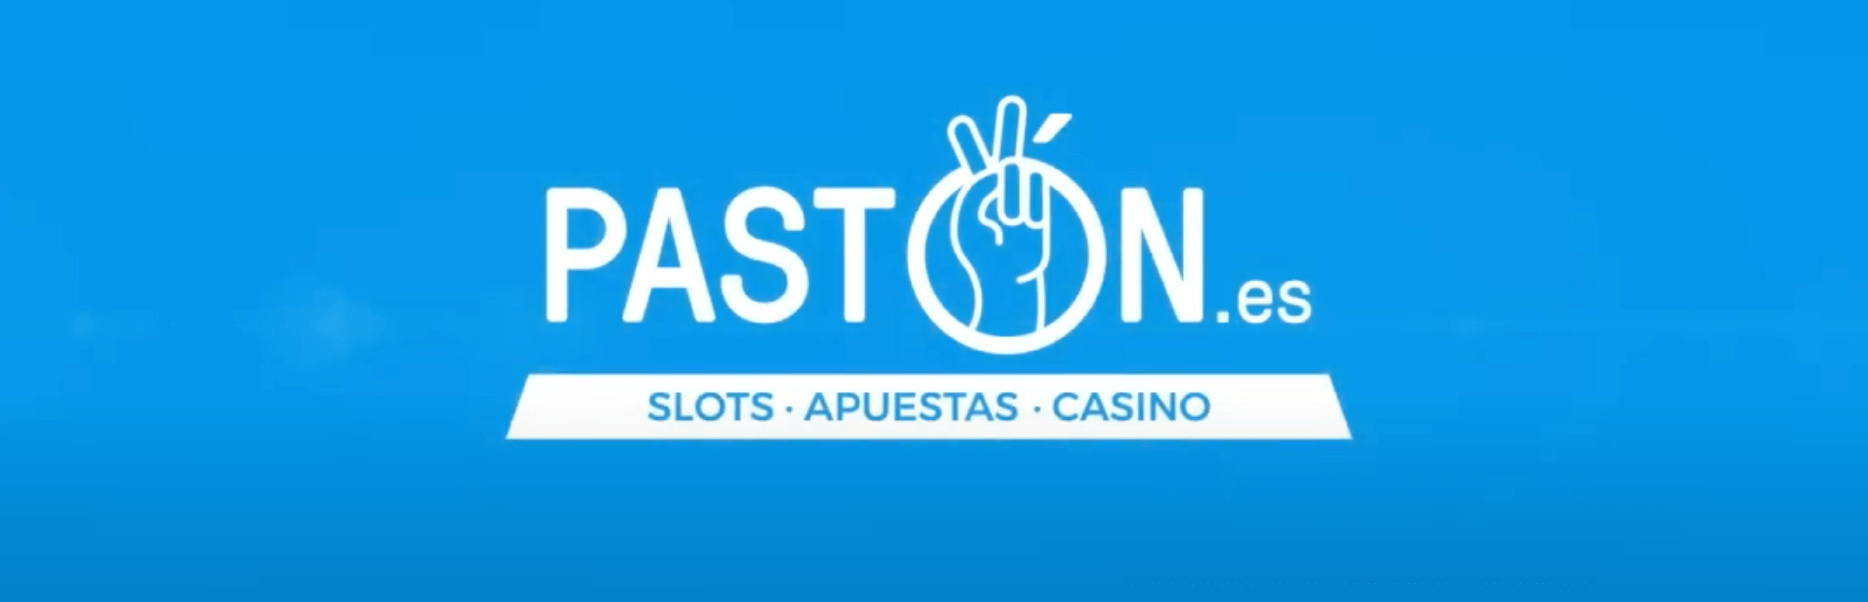 Nuevo spot publicitario de Pastón Casino: ¡Ventajas que molan y mucho!